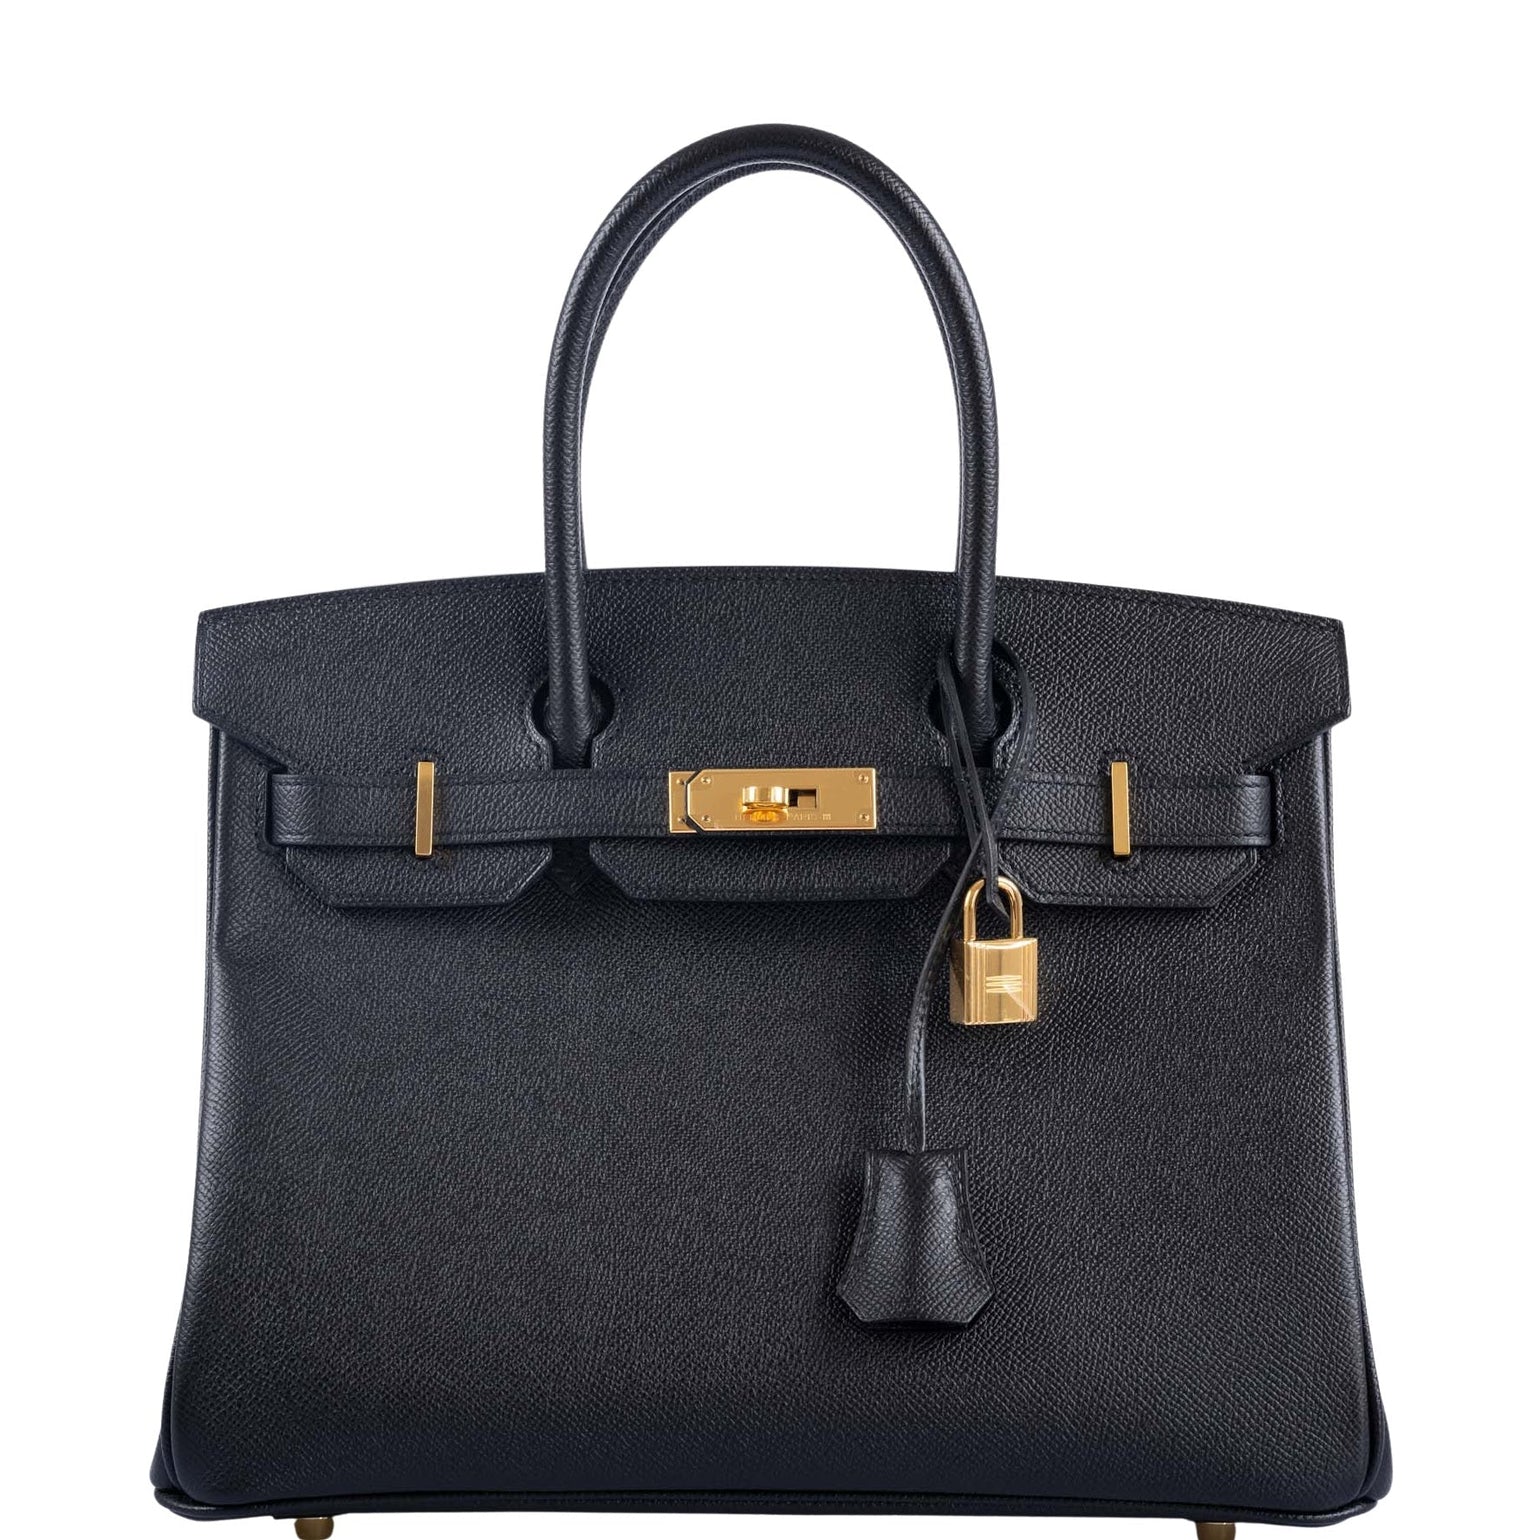 Hermès Birkin Bags: 20, 25, 30, 35 & 40cm, Baby Birkin | JaneFinds